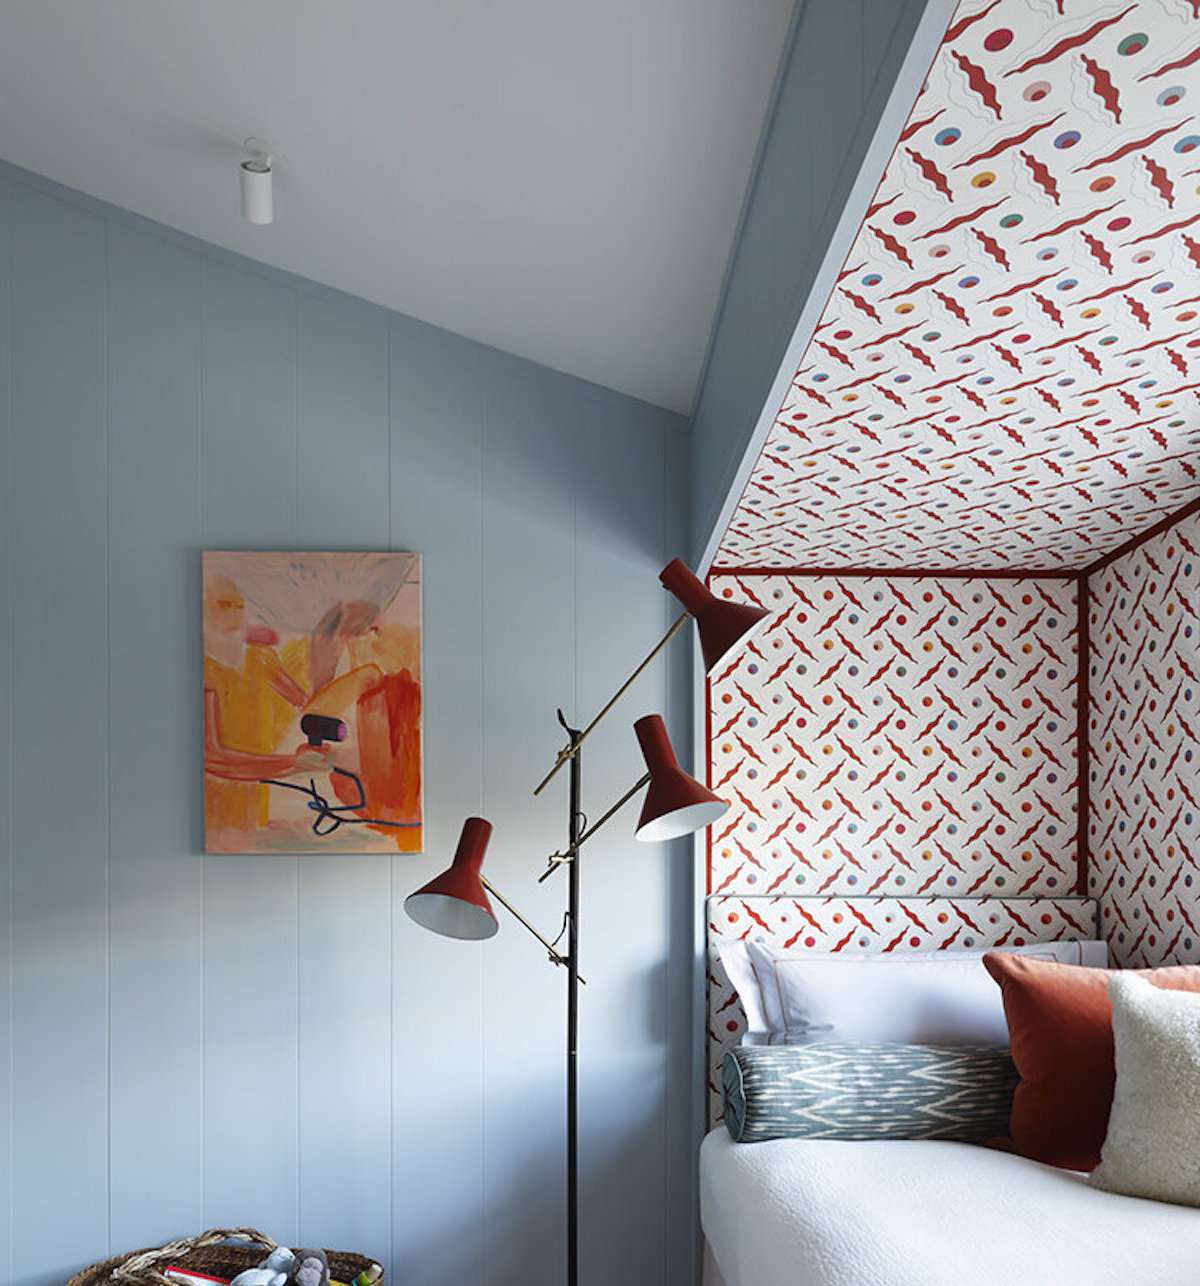 quarto com paredes azuis claras, padrão vermelho e branco em um canto com uma cama, luminária vermelha moderna